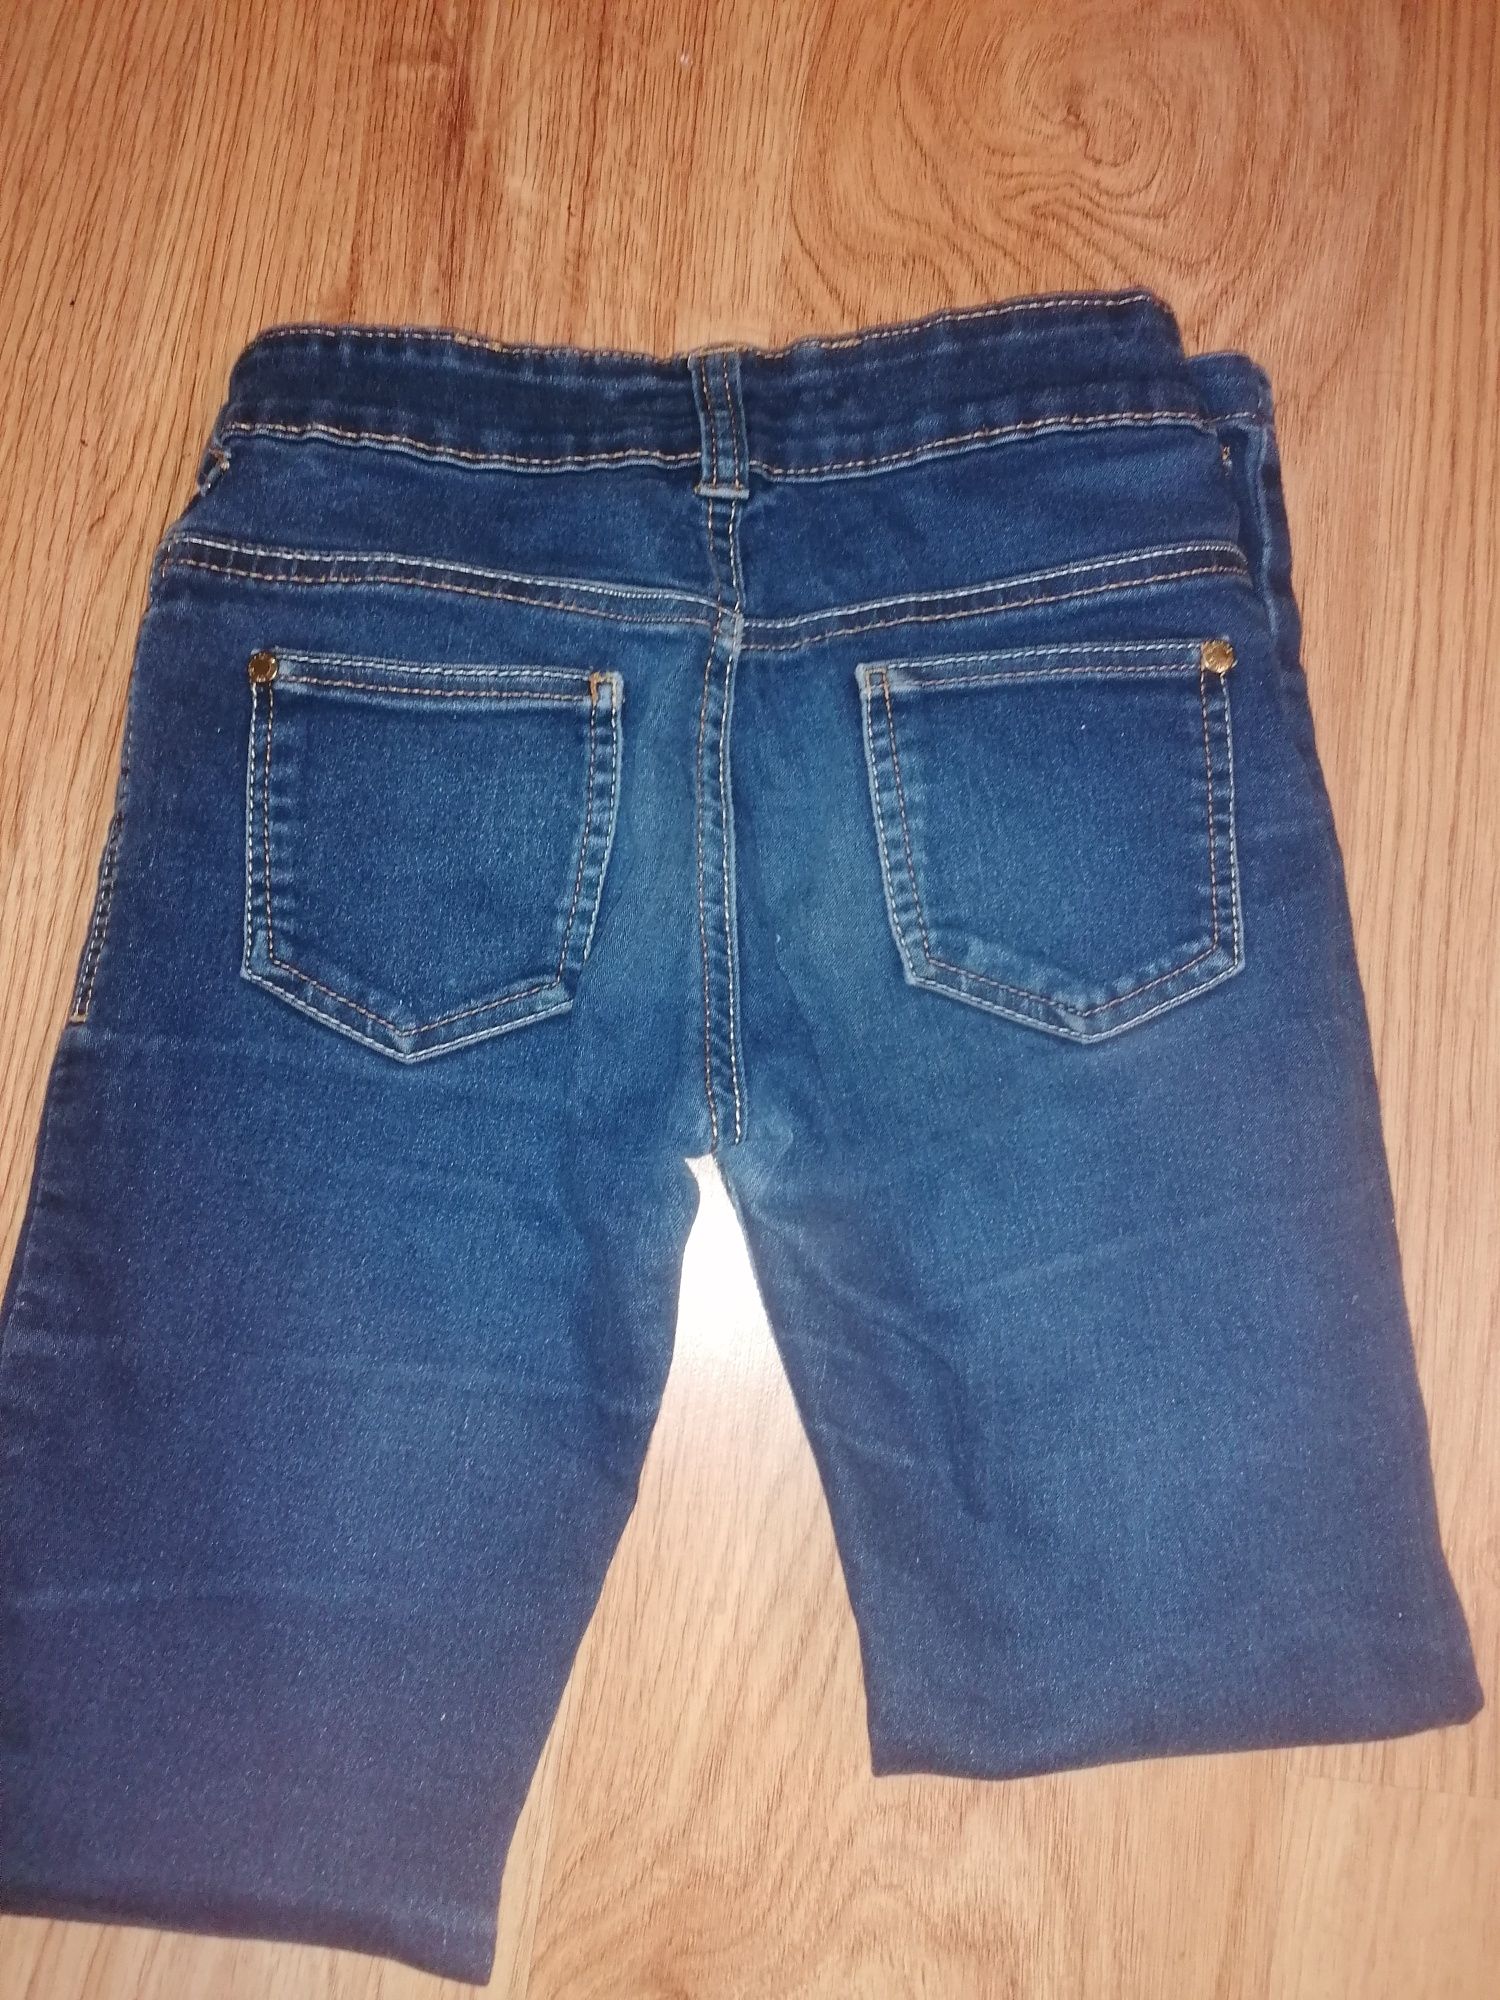 Spodnie dżinsowe dla dziewczynki rozmiar 134 cm